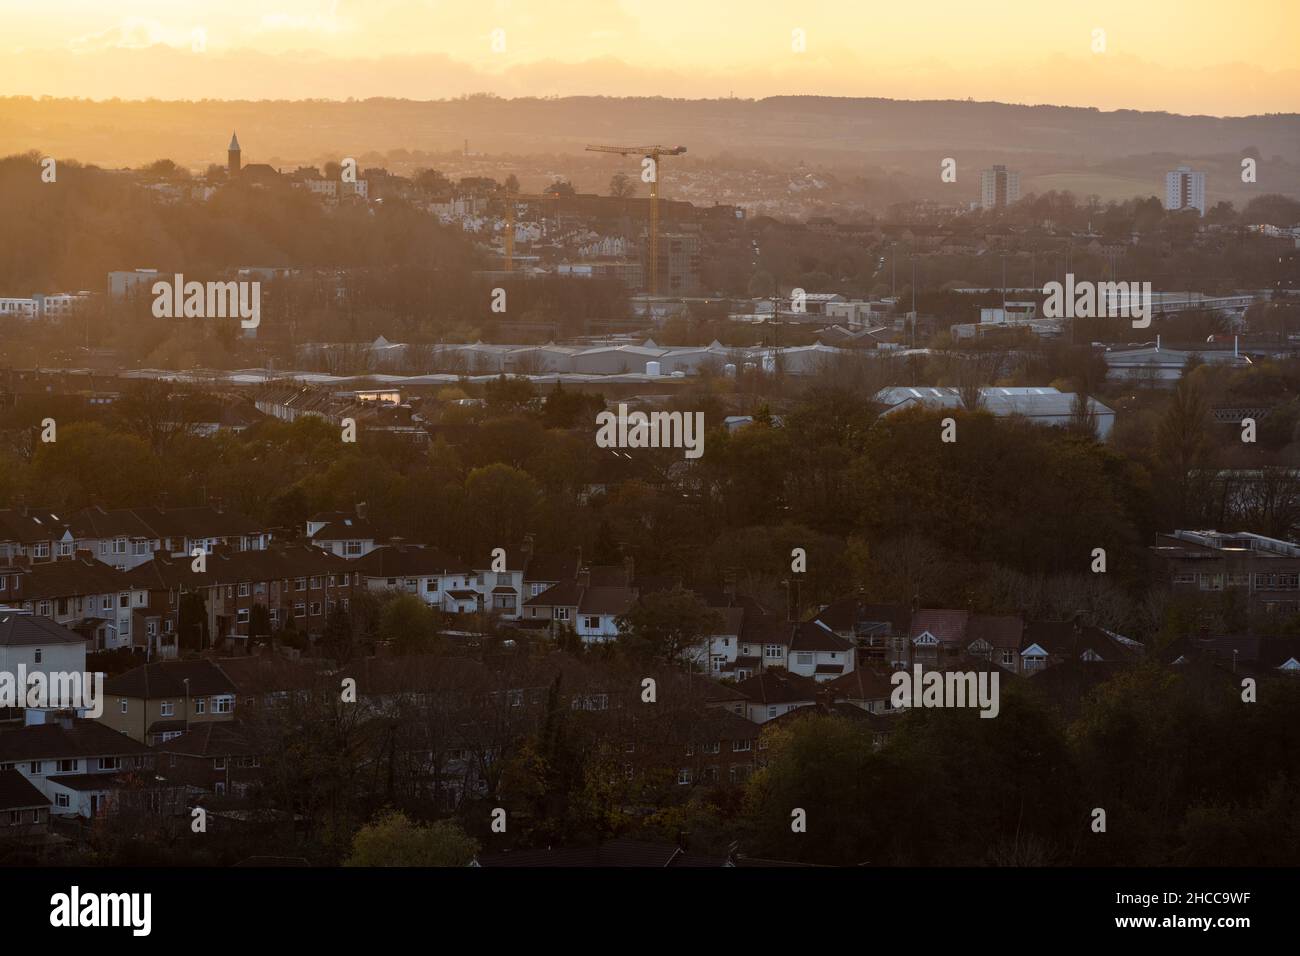 Das Stadtbild von South Bristol, einschließlich St Annes, St Phillip's Marsh Industrial Estate, Totterdown and Knowle, Bedminster und Bedminster Down, mit Stockfoto